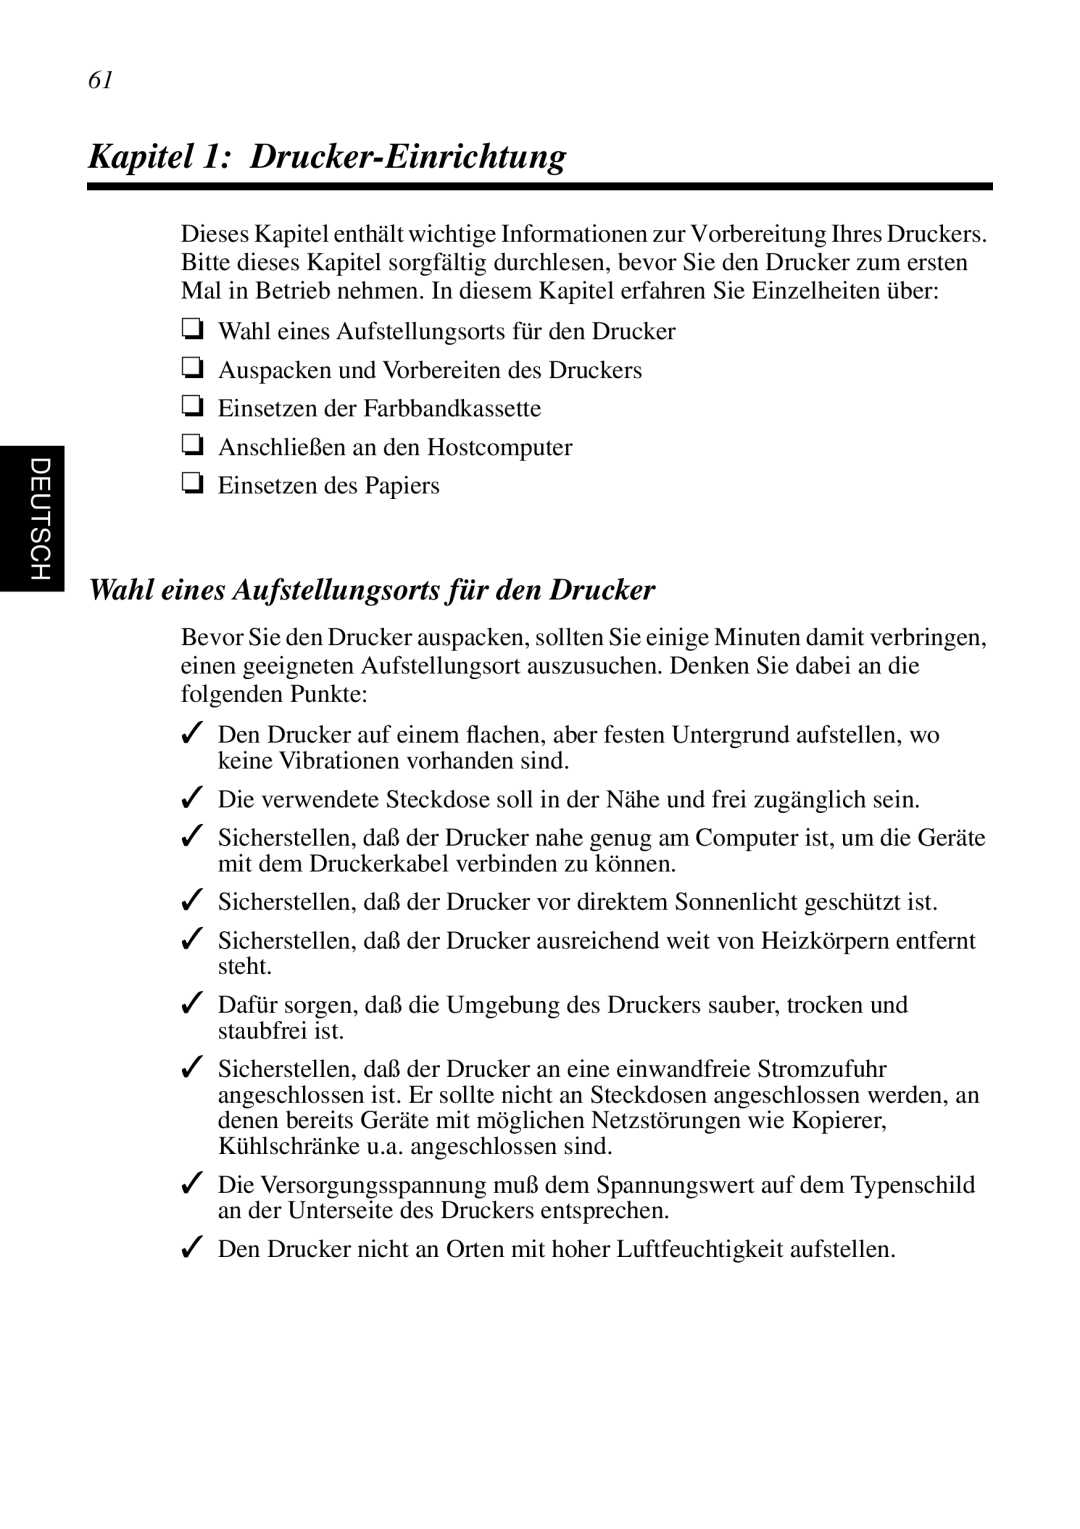 Star Micronics SP298 user manual Kapitel 1 Drucker-Einrichtung, Wahl eines Aufstellungsorts für den Drucker, Deutsch 